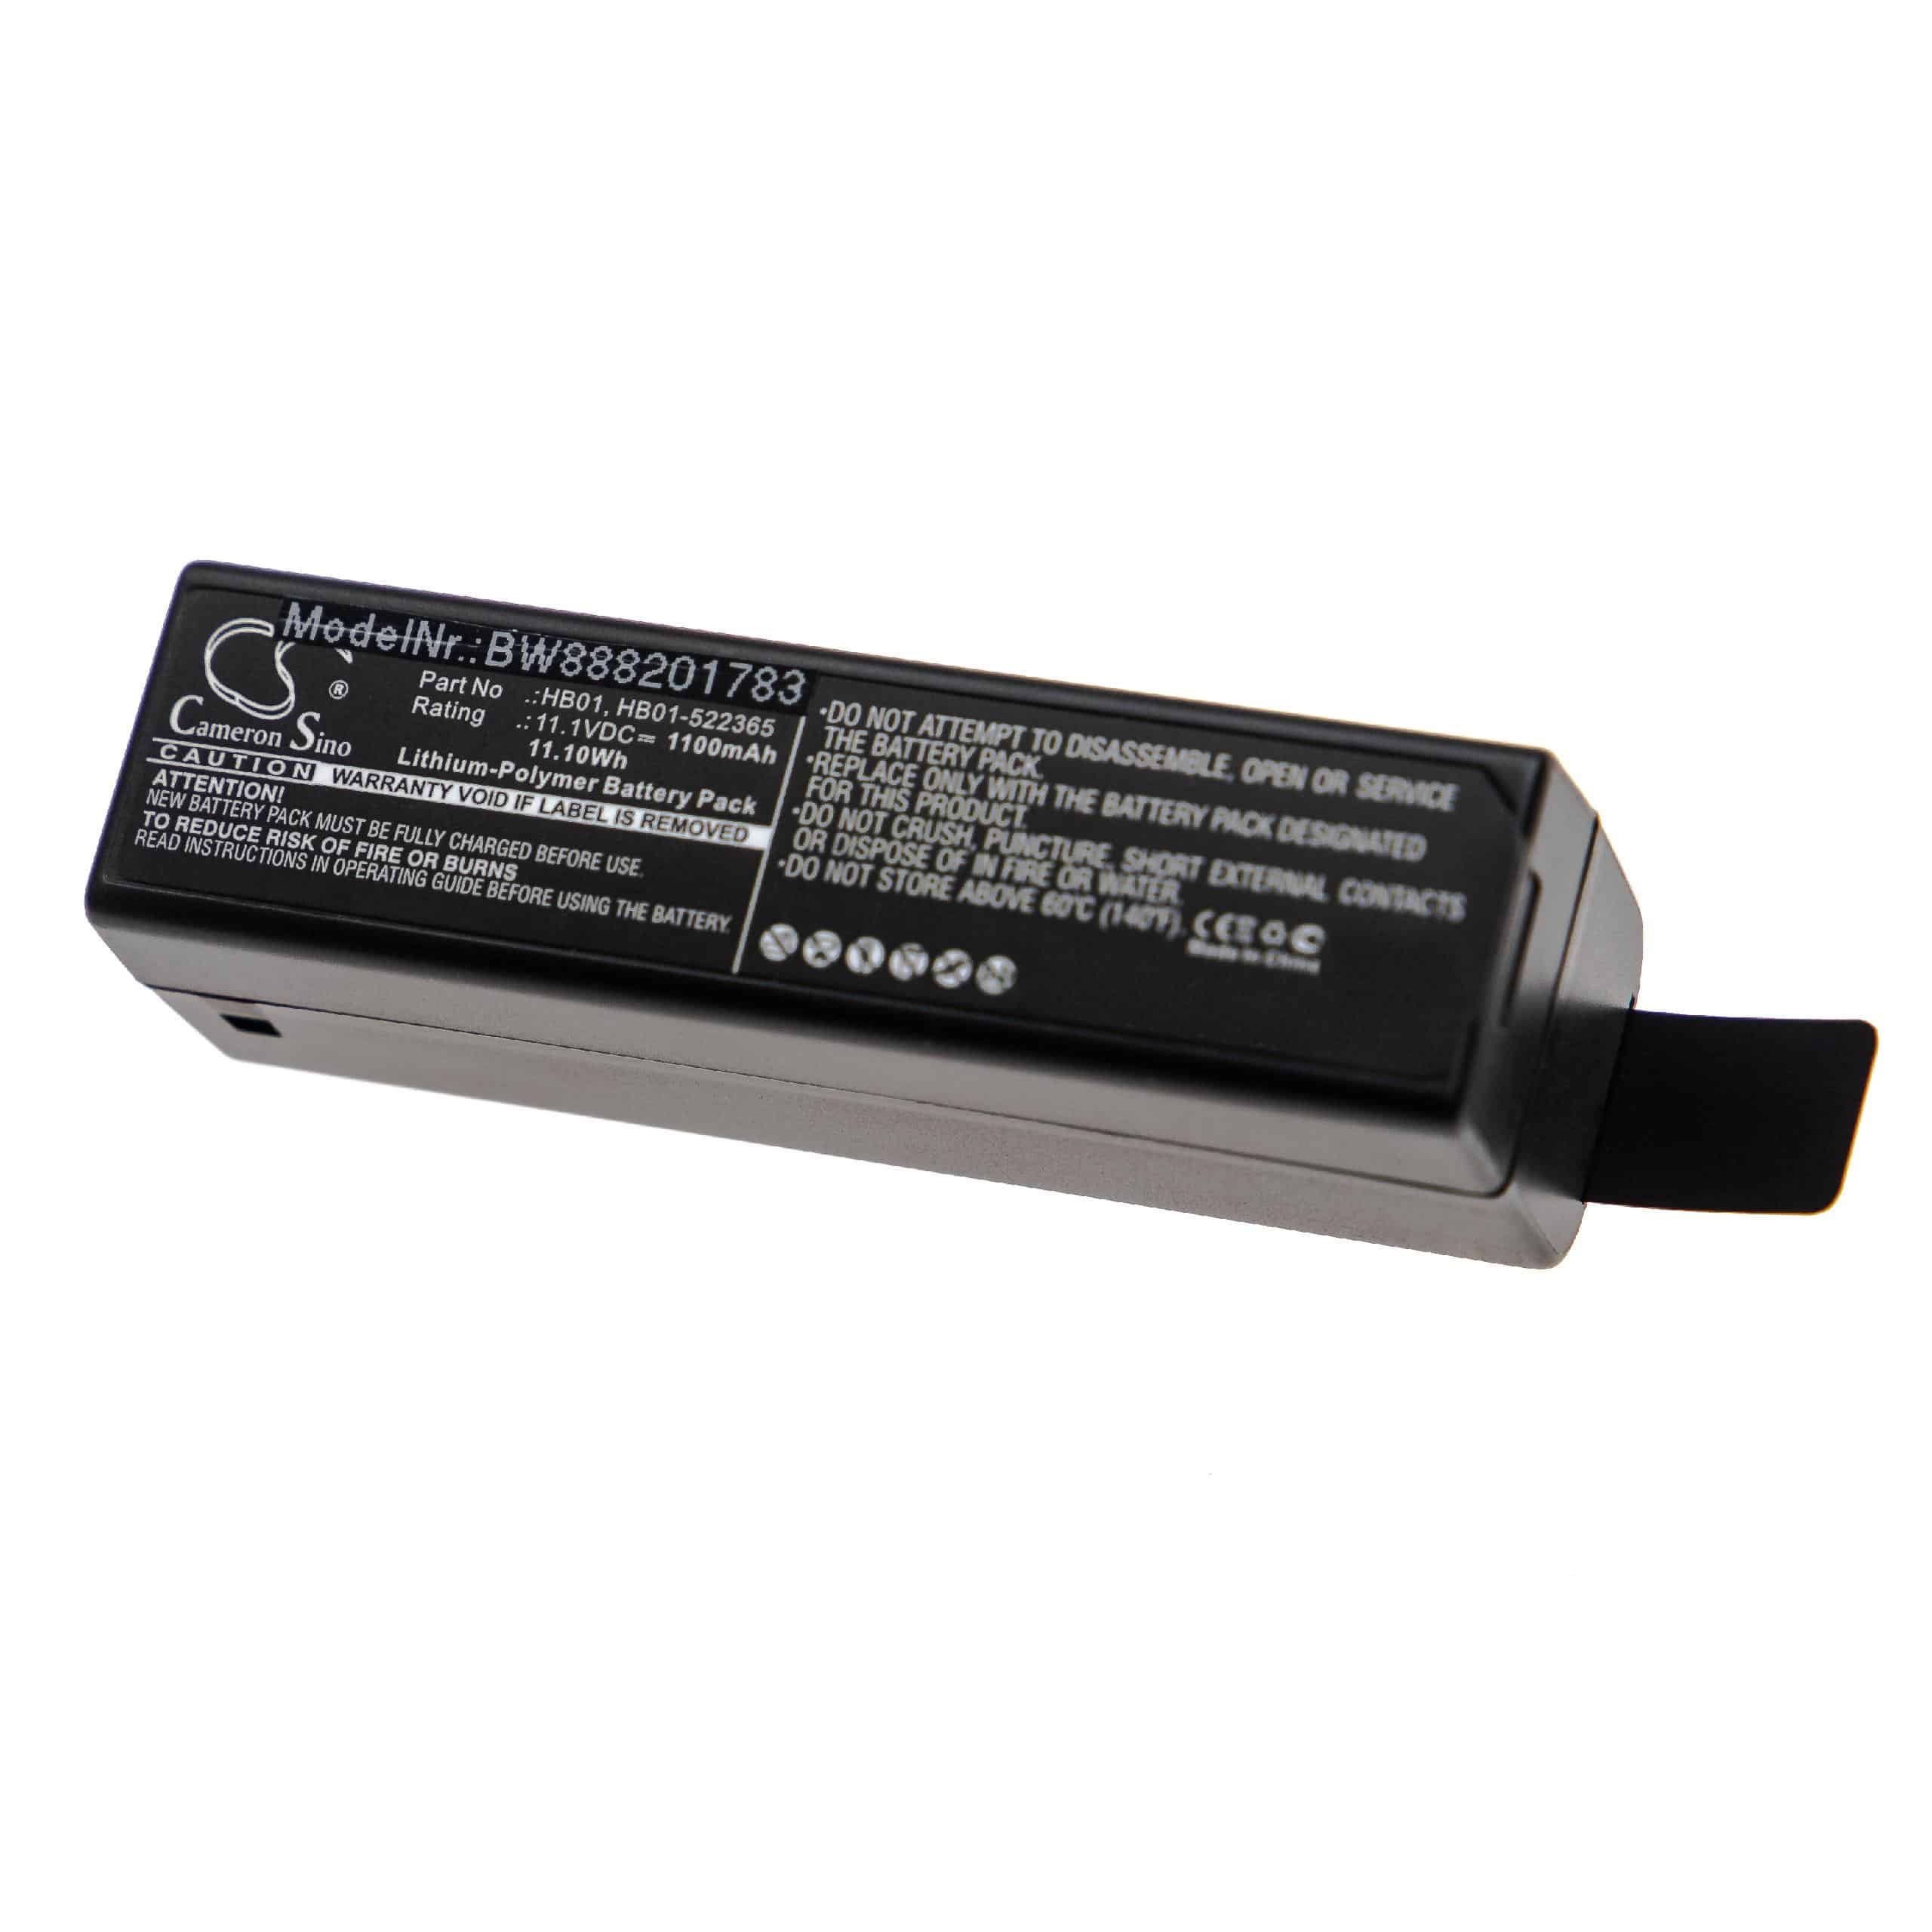 Batteria sostituisce DJI HB01, HB01-522365 per fotocamera DJI - 1100mAh 11,1V Li-Poly